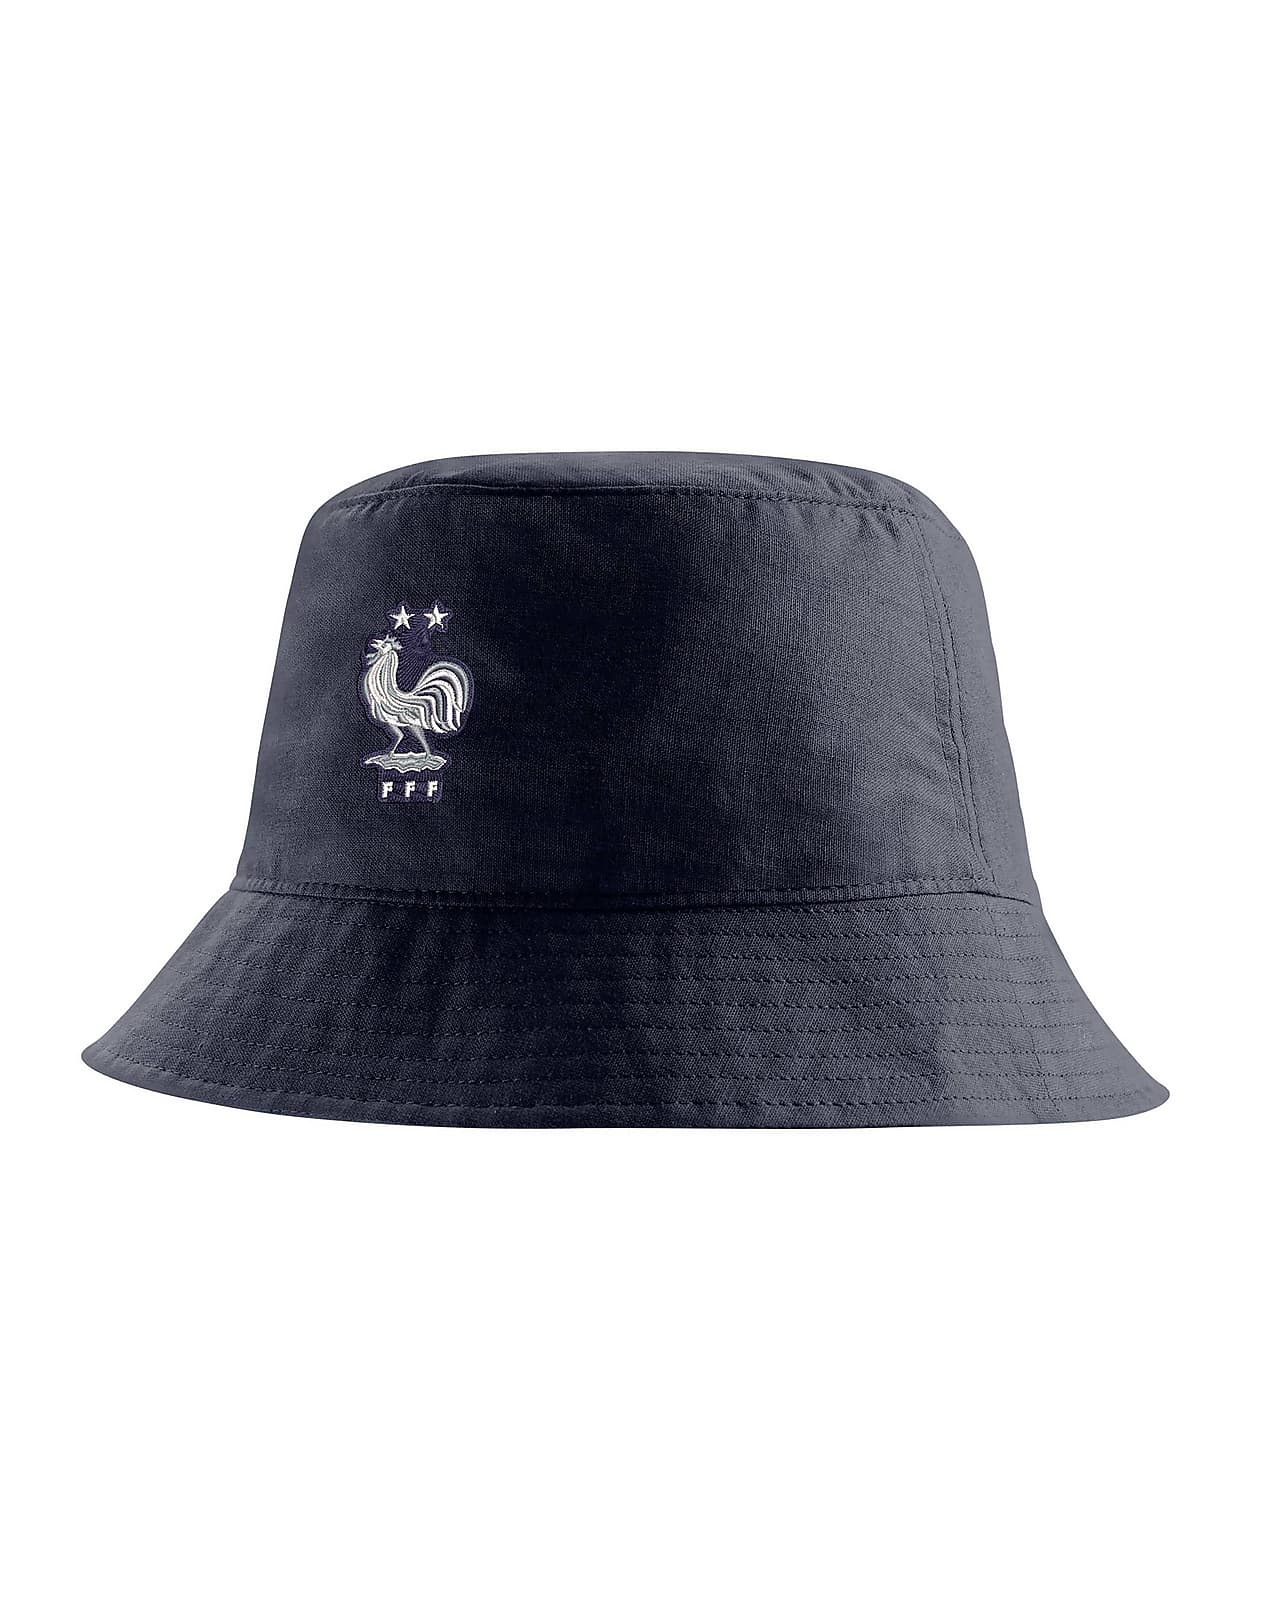 FFF Men's Bucket Hat